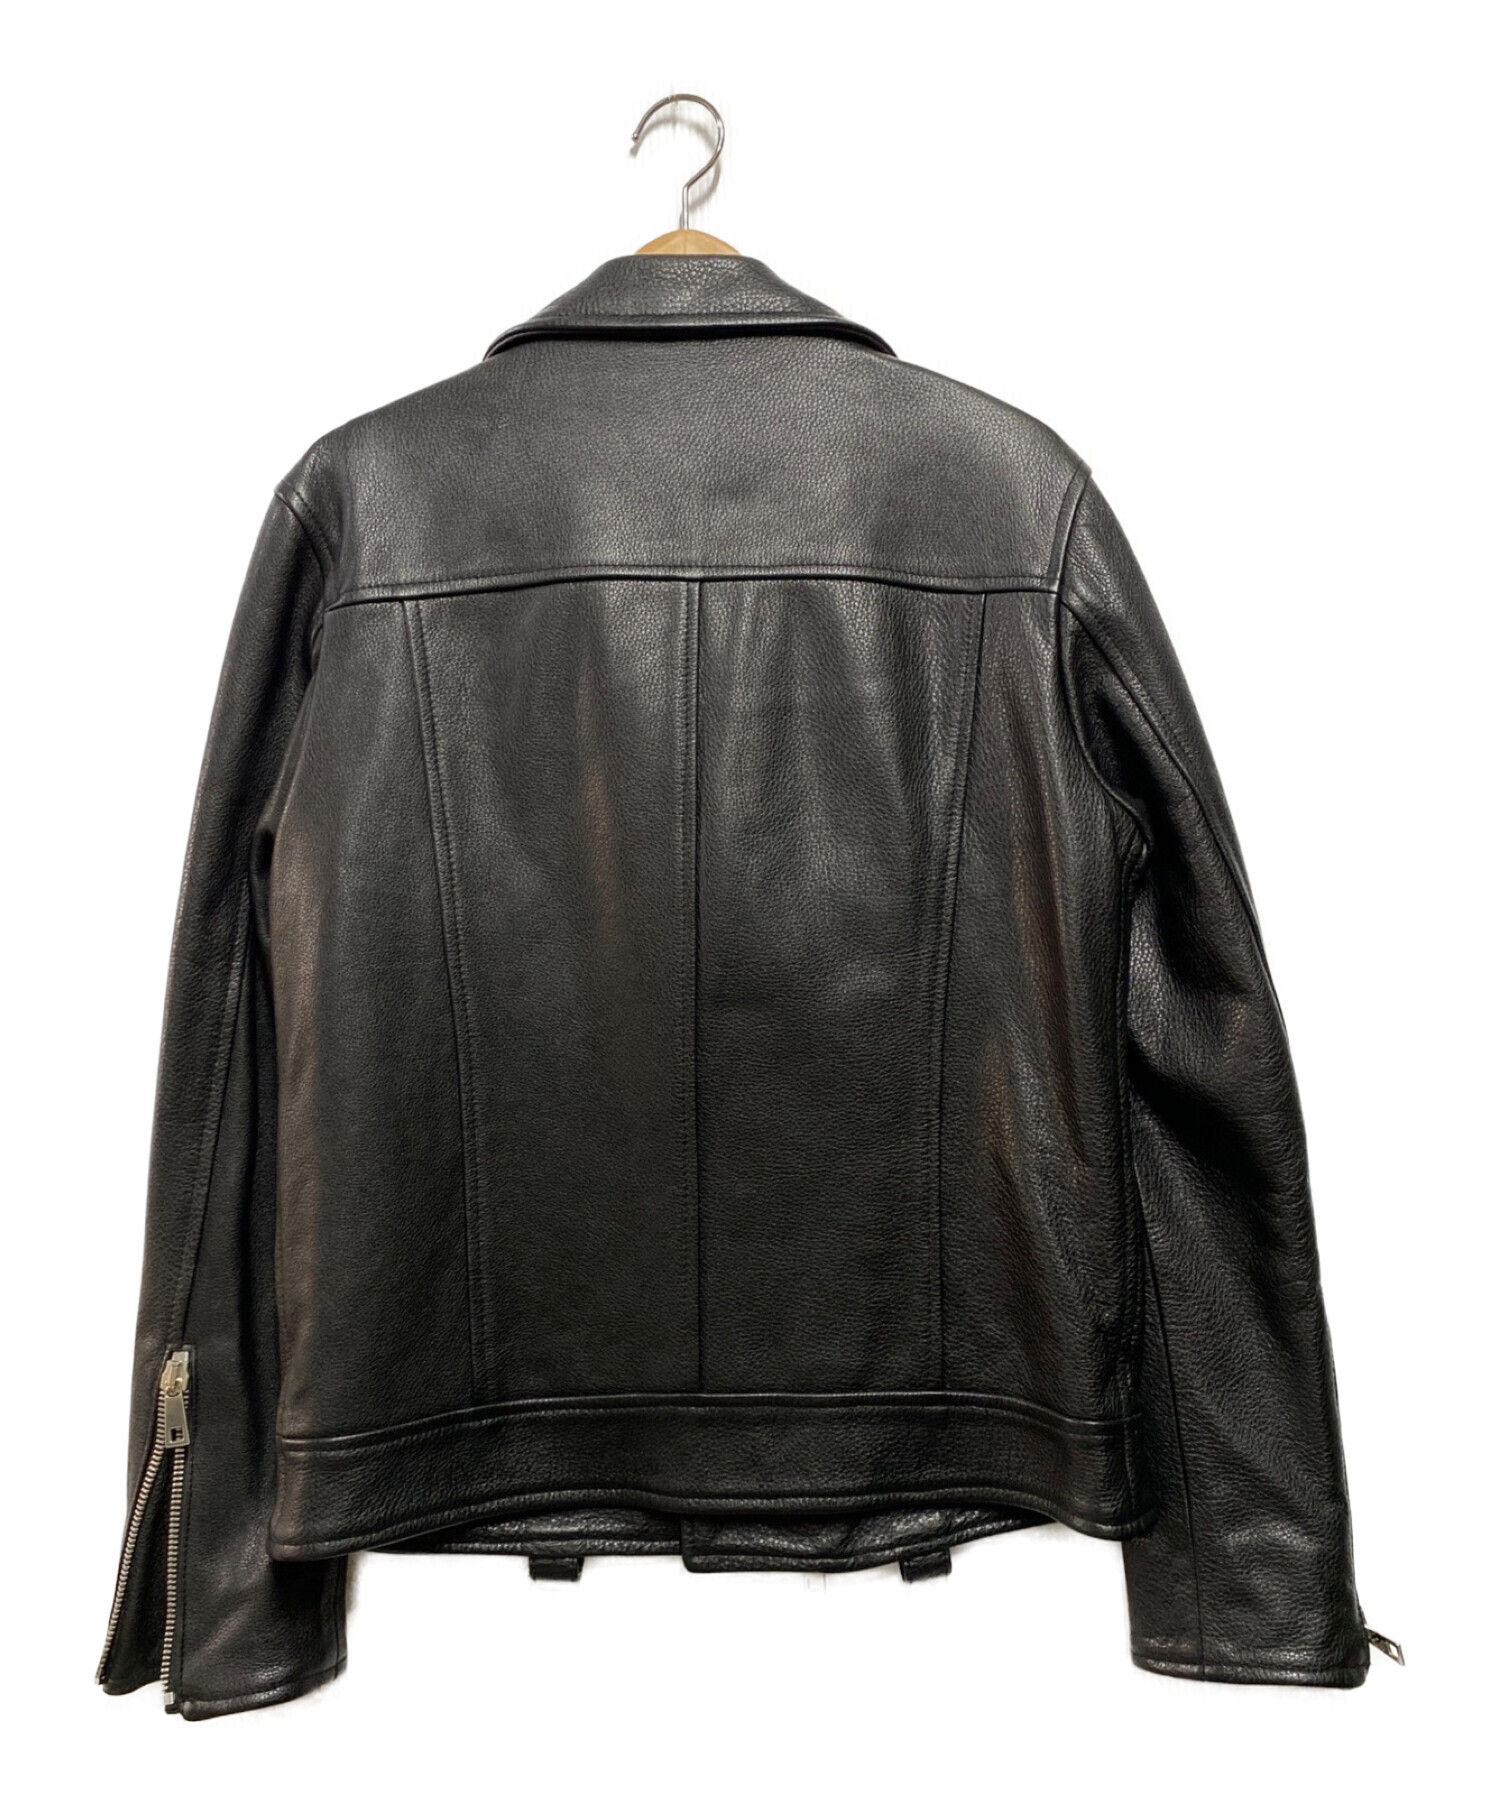 MUSHER (マーシャー) カウレザーライダースジャケット ブラック サイズ:L